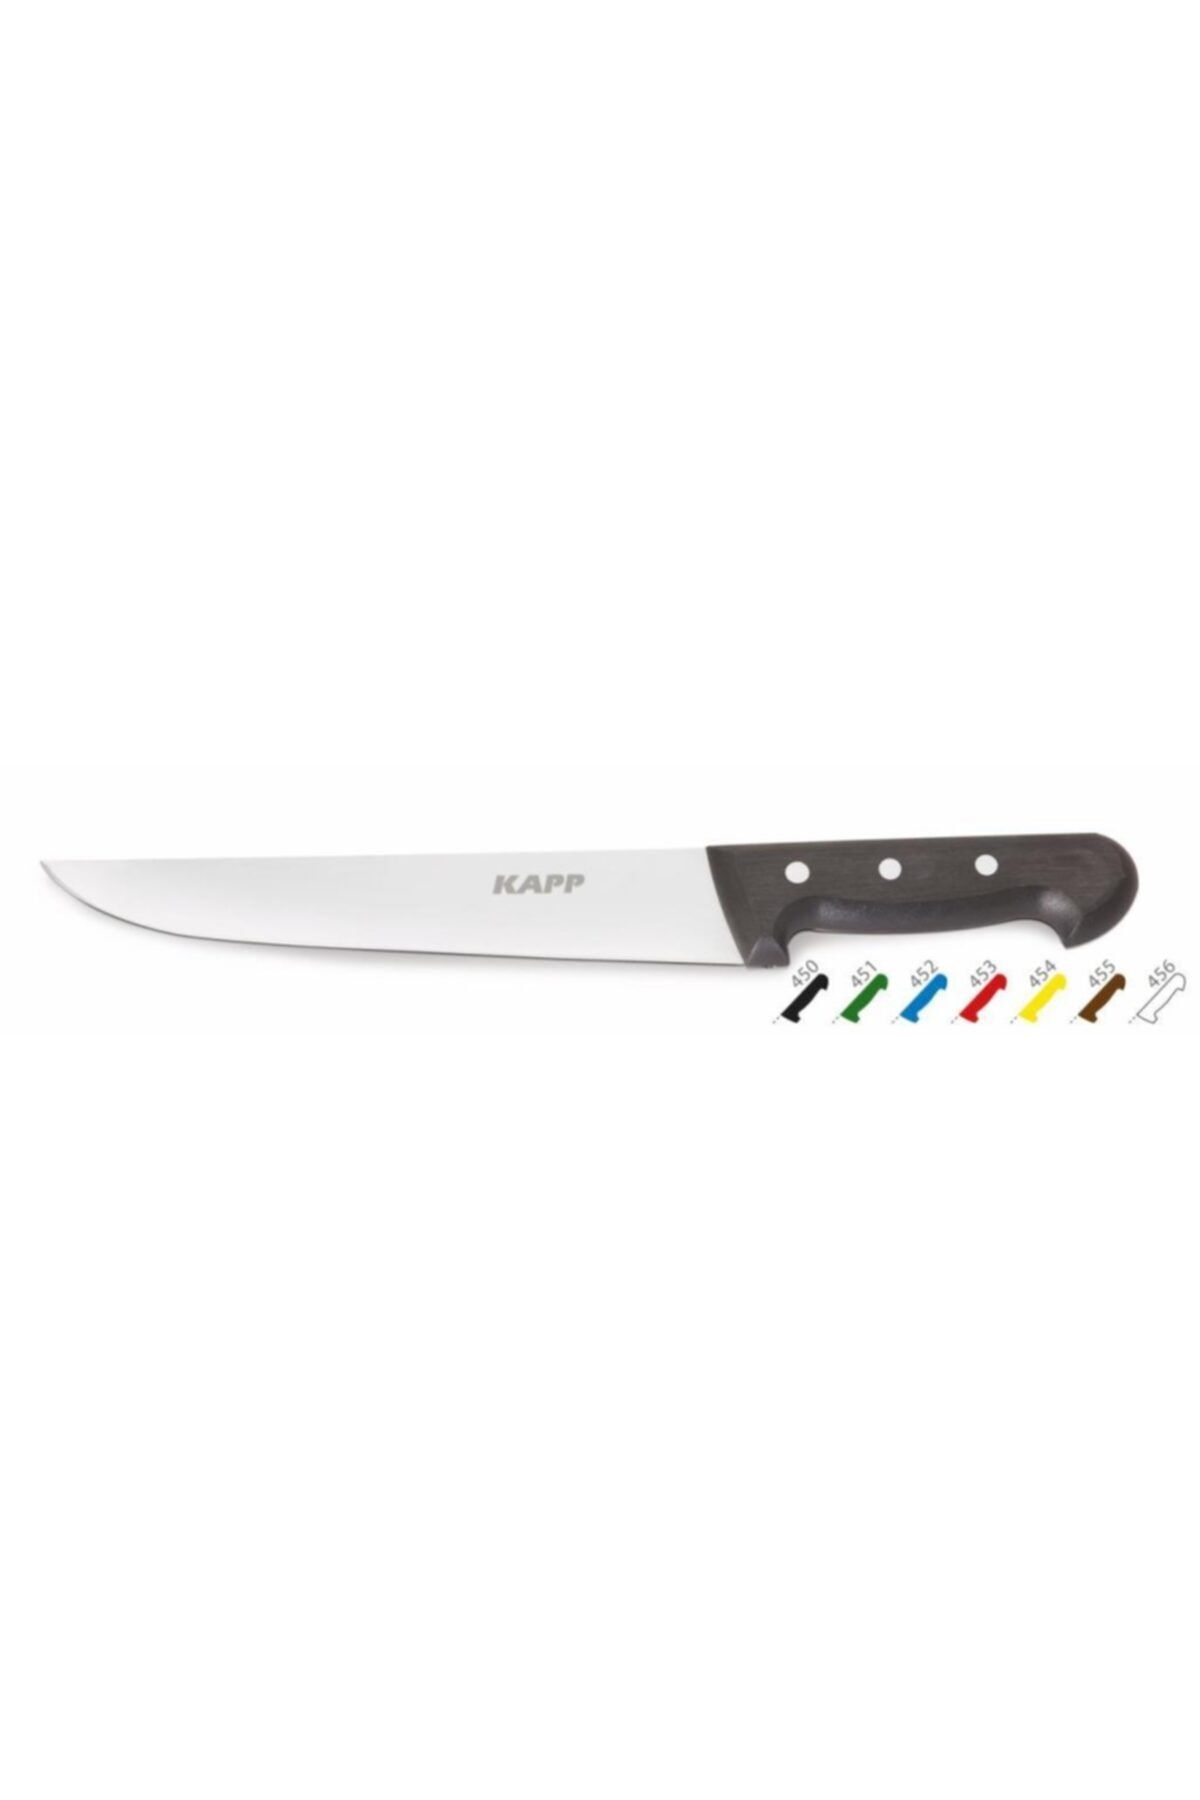 Kapp Mutfak Bıçağı – Sarı 14,5 Cm